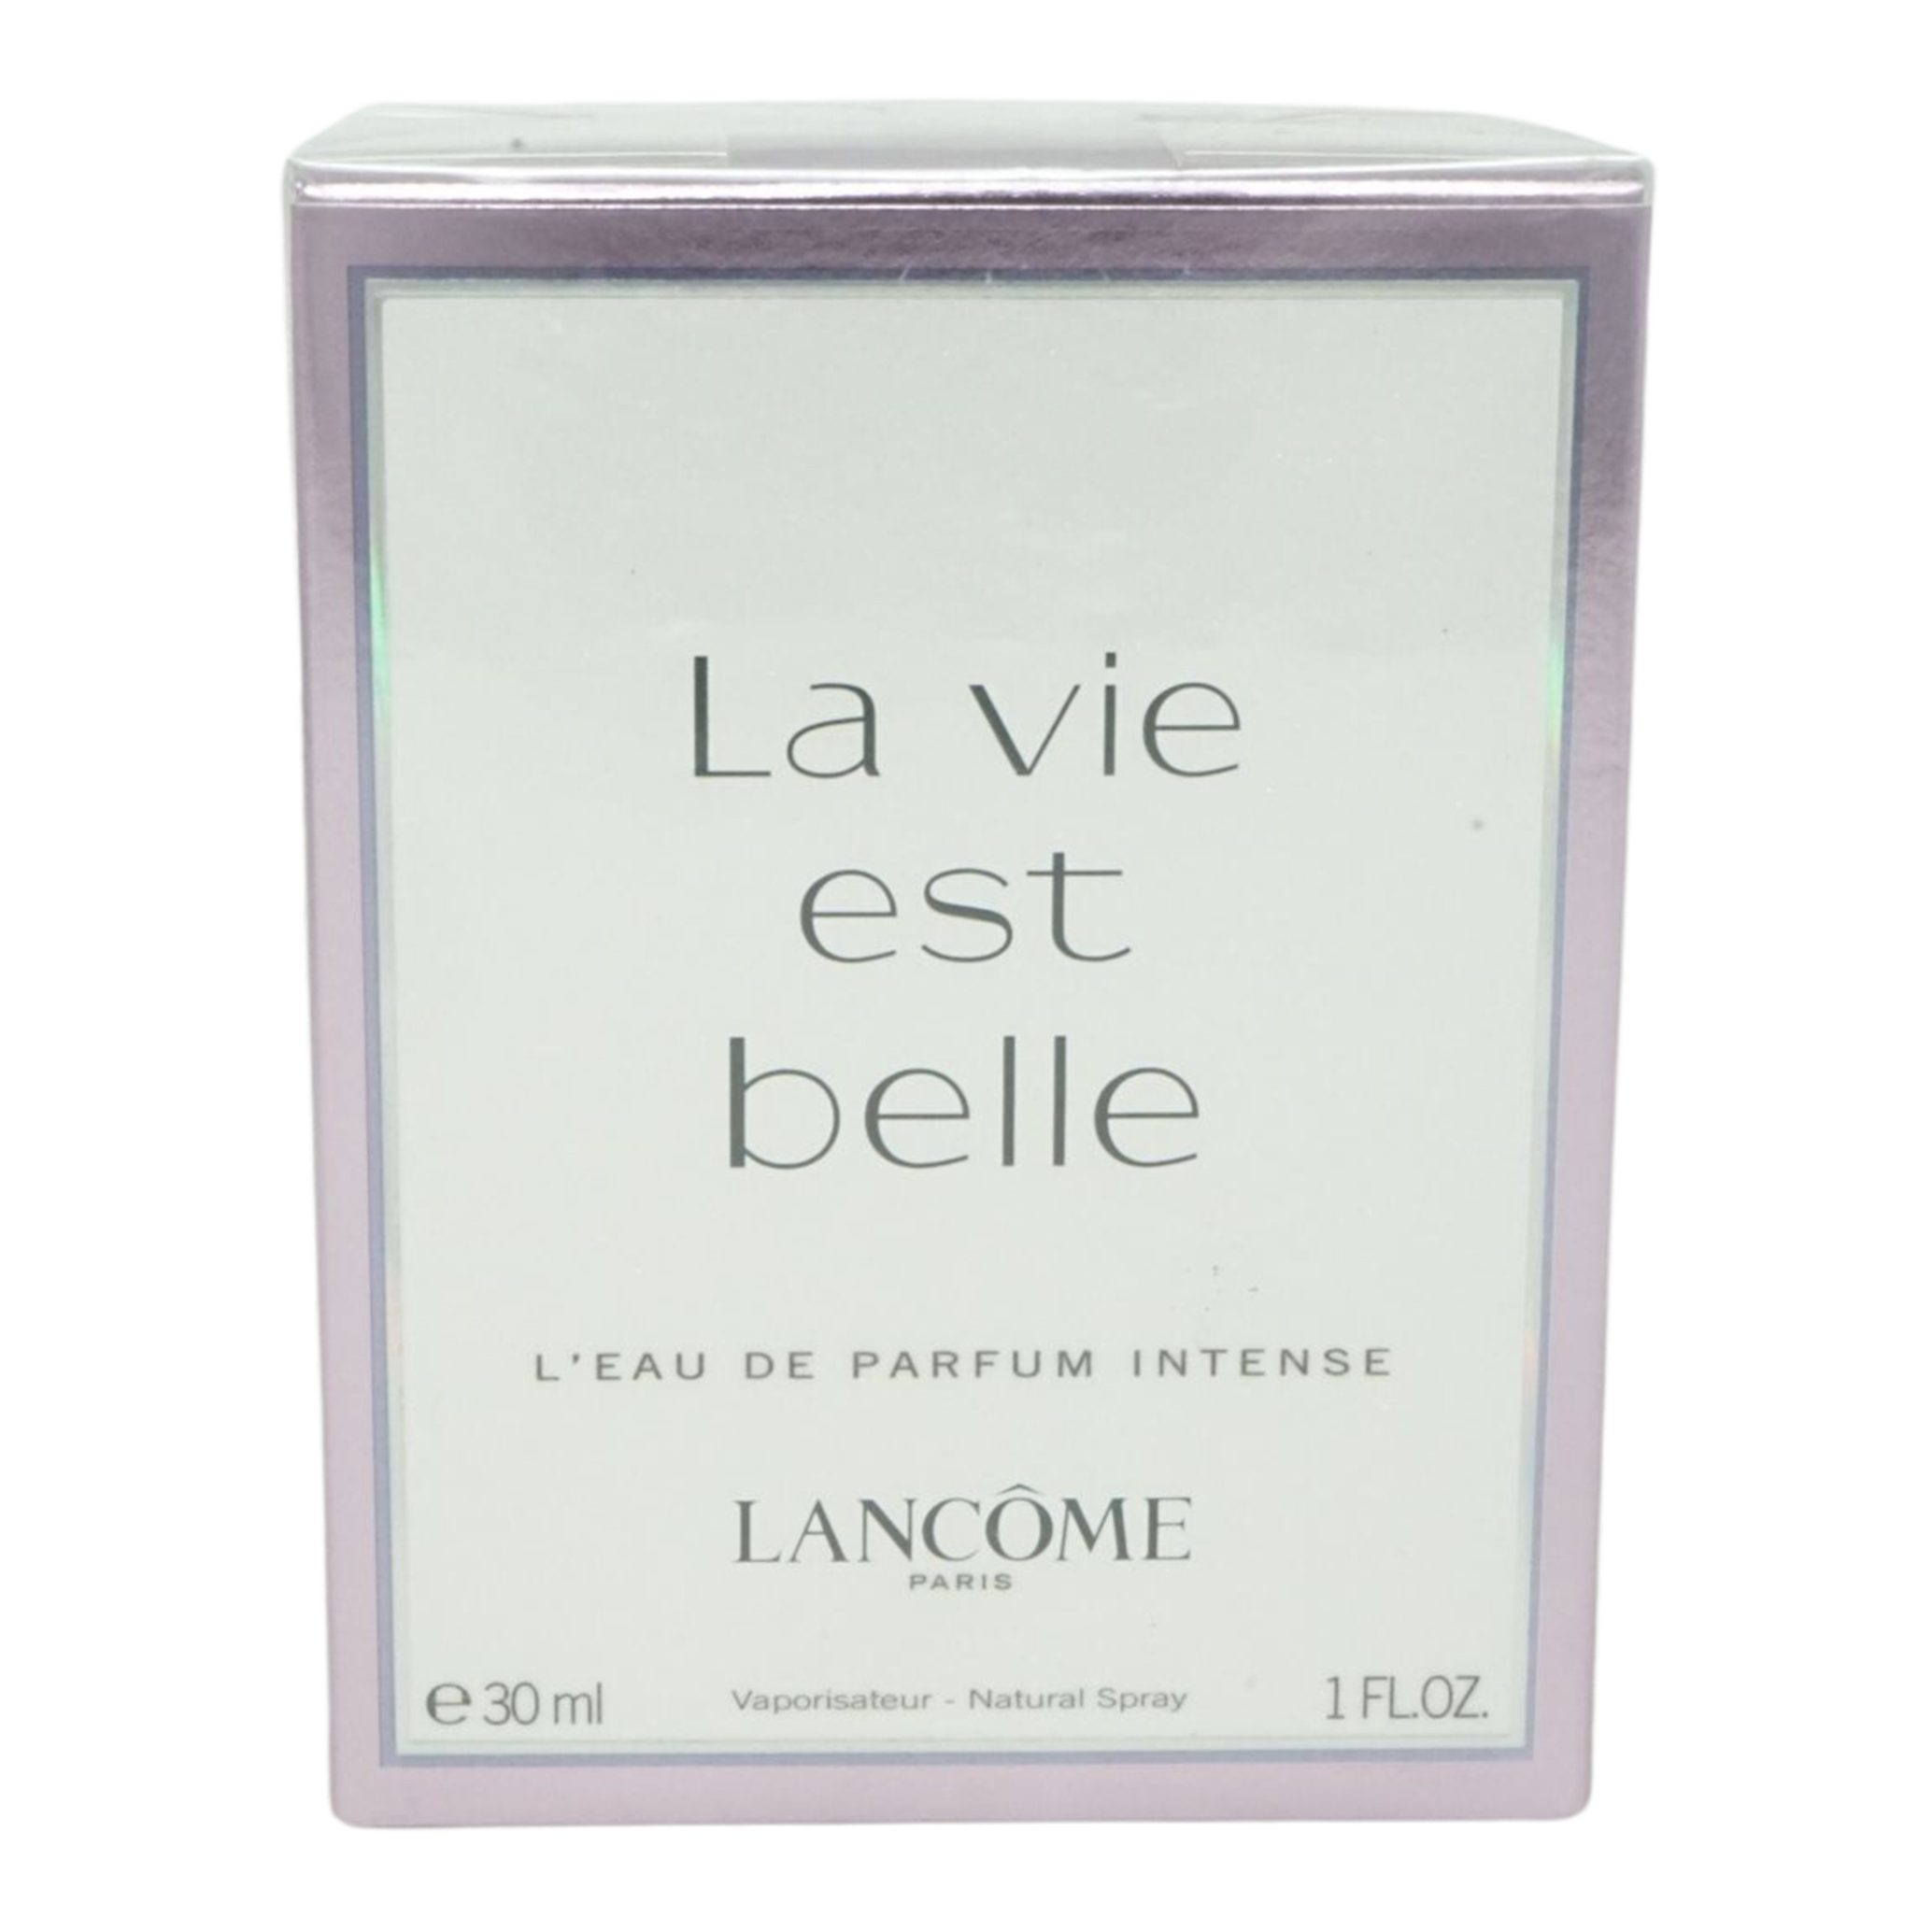 LANCOME Eau de Parfum Lancome La Vie est Belle L'eau de Parfum Intense Spray 30ml